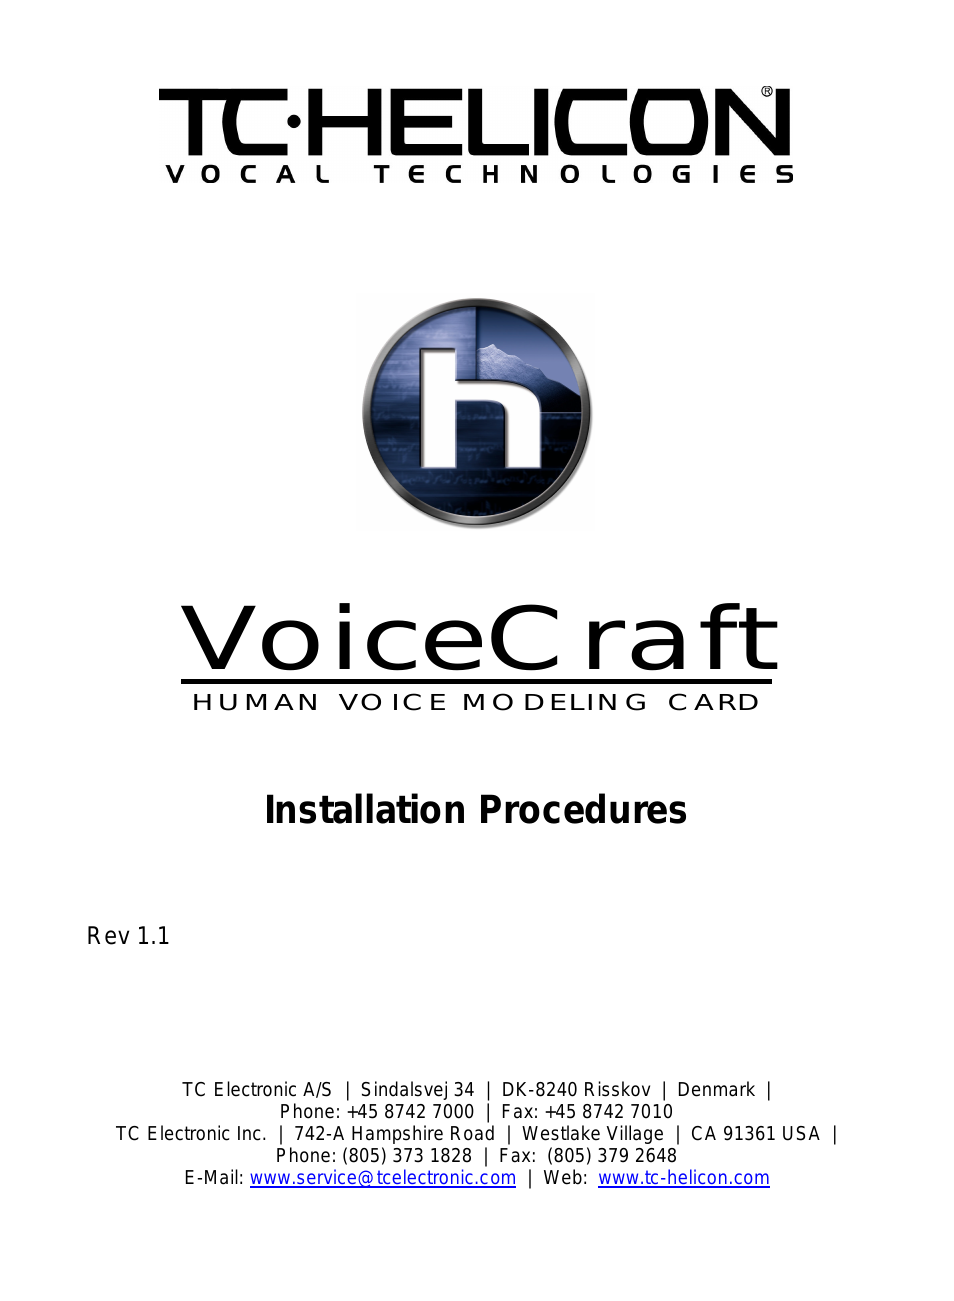 VoiceCraft Installation Guide